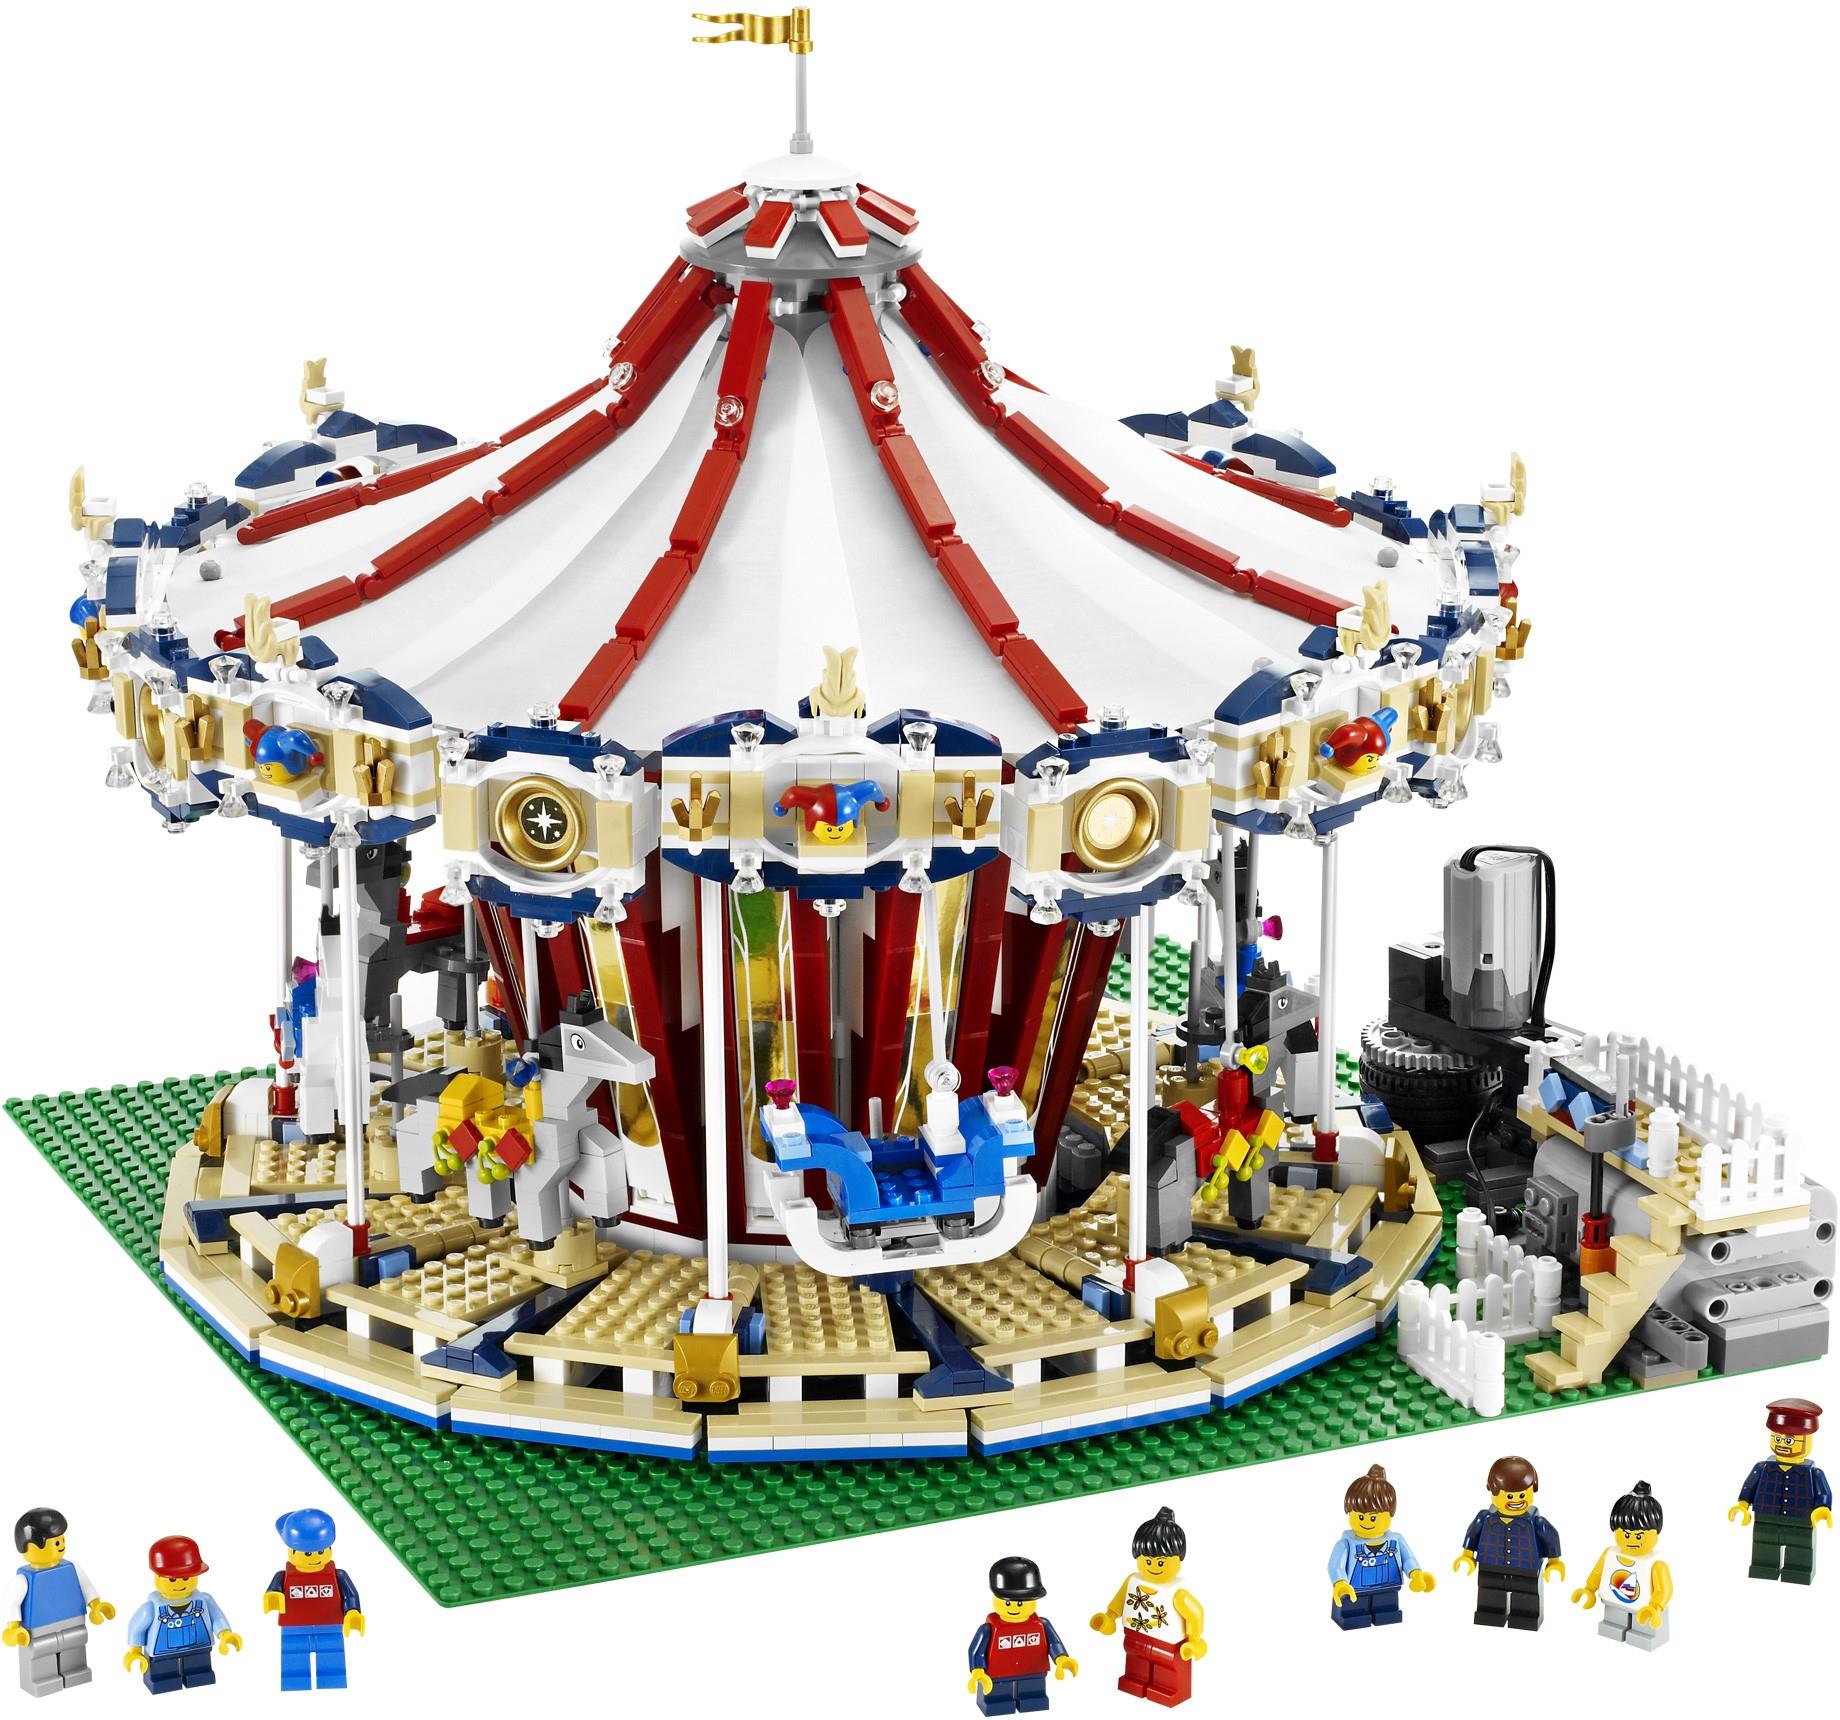 Afbestille impuls Recite LEGO 10196 Grand Carousel | BrickEconomy